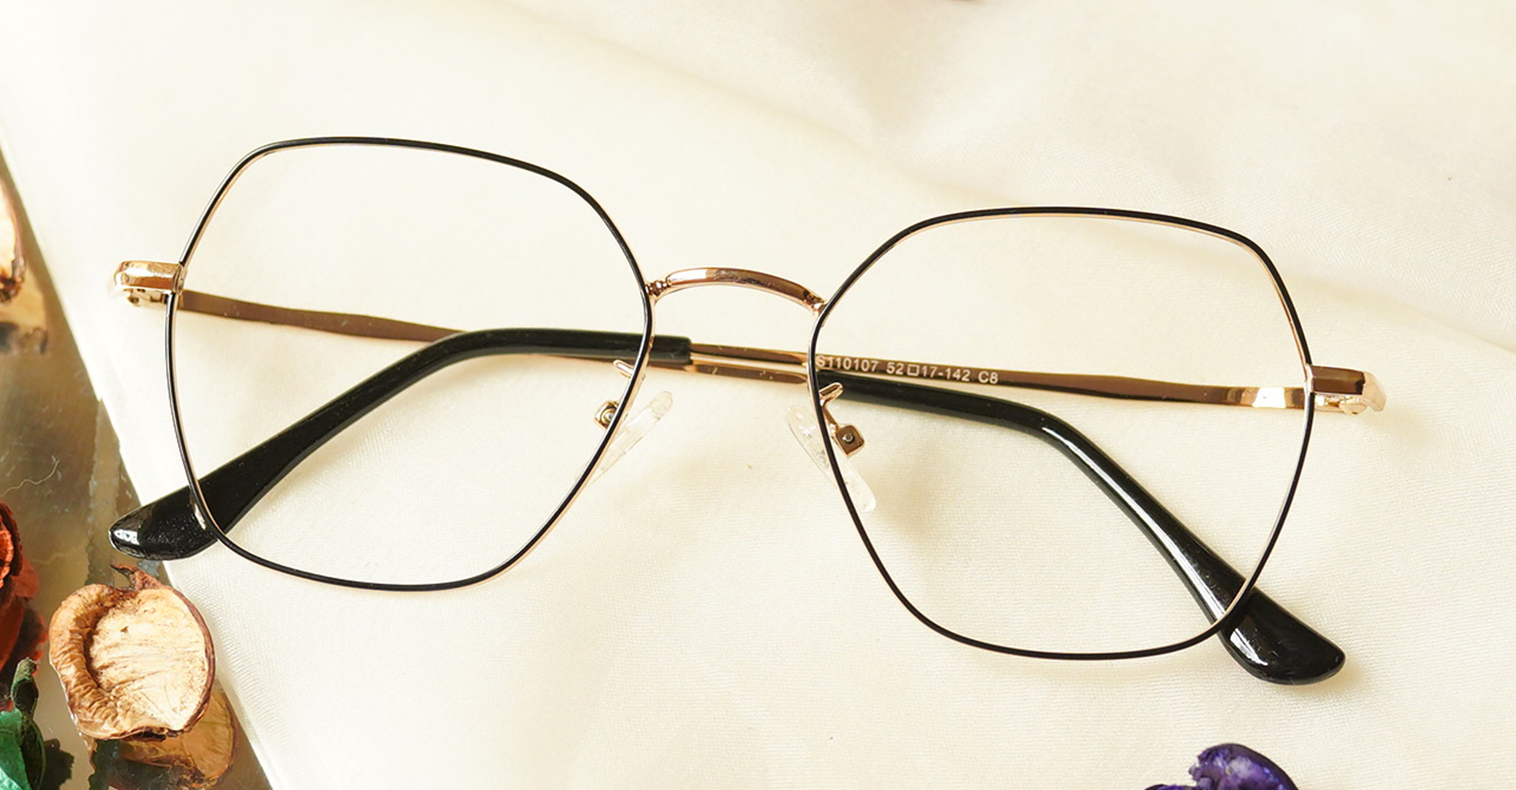 Negro Blue Cut Eyeglasses - Buy Online Glasses & Sunglasses